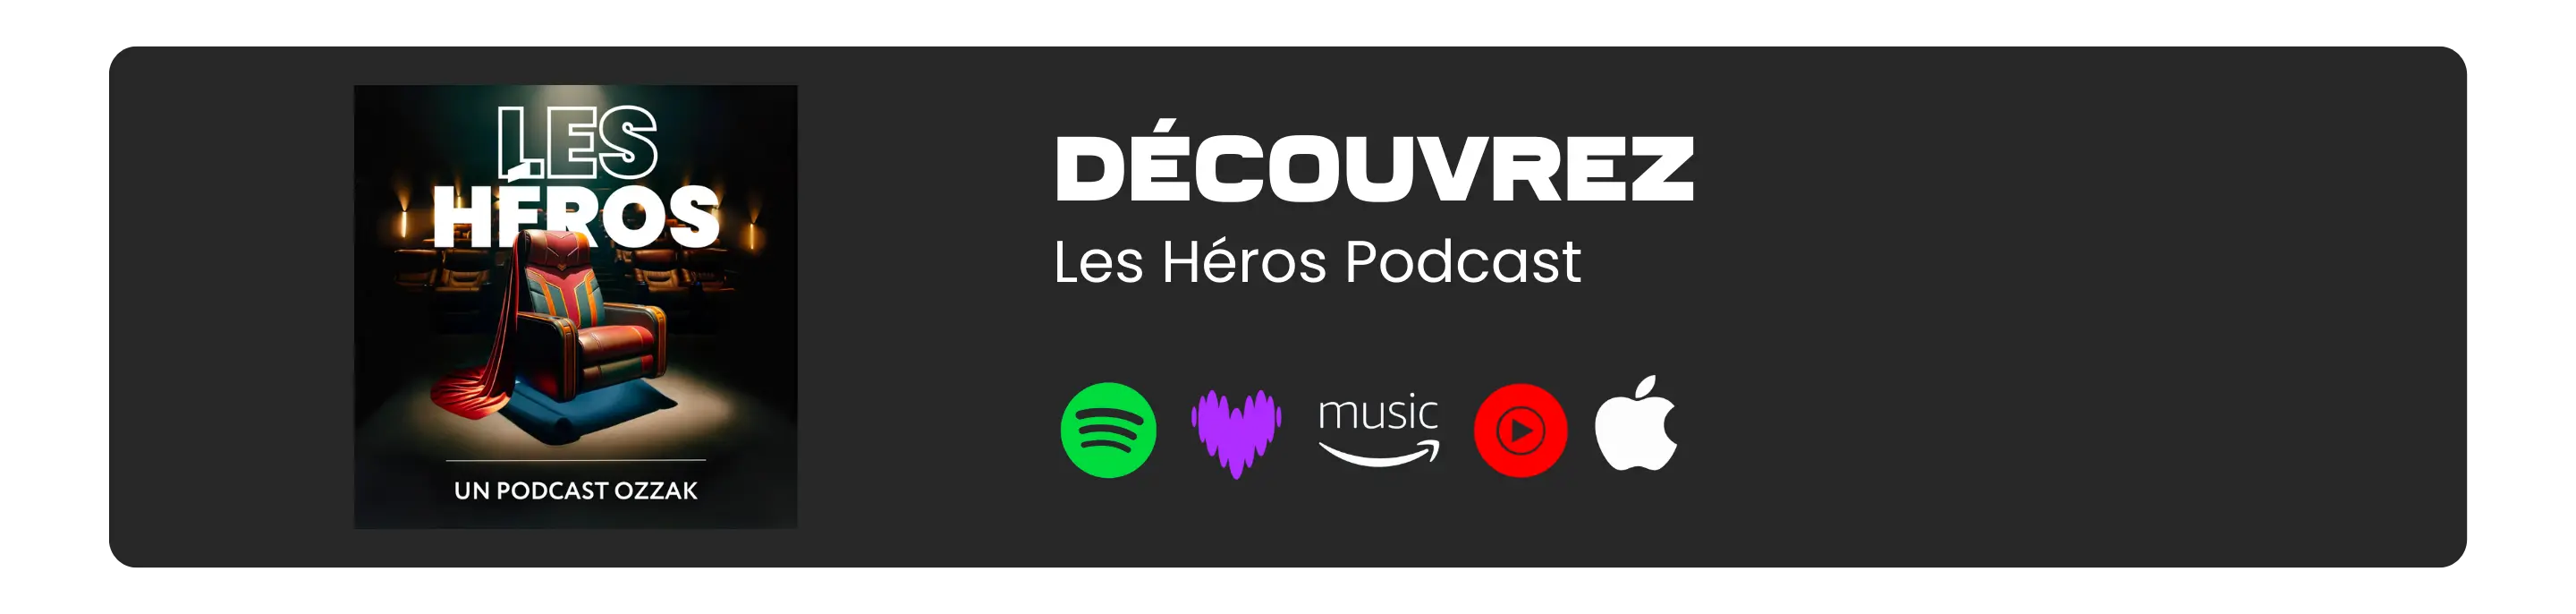 Découvrez les héros podcast !